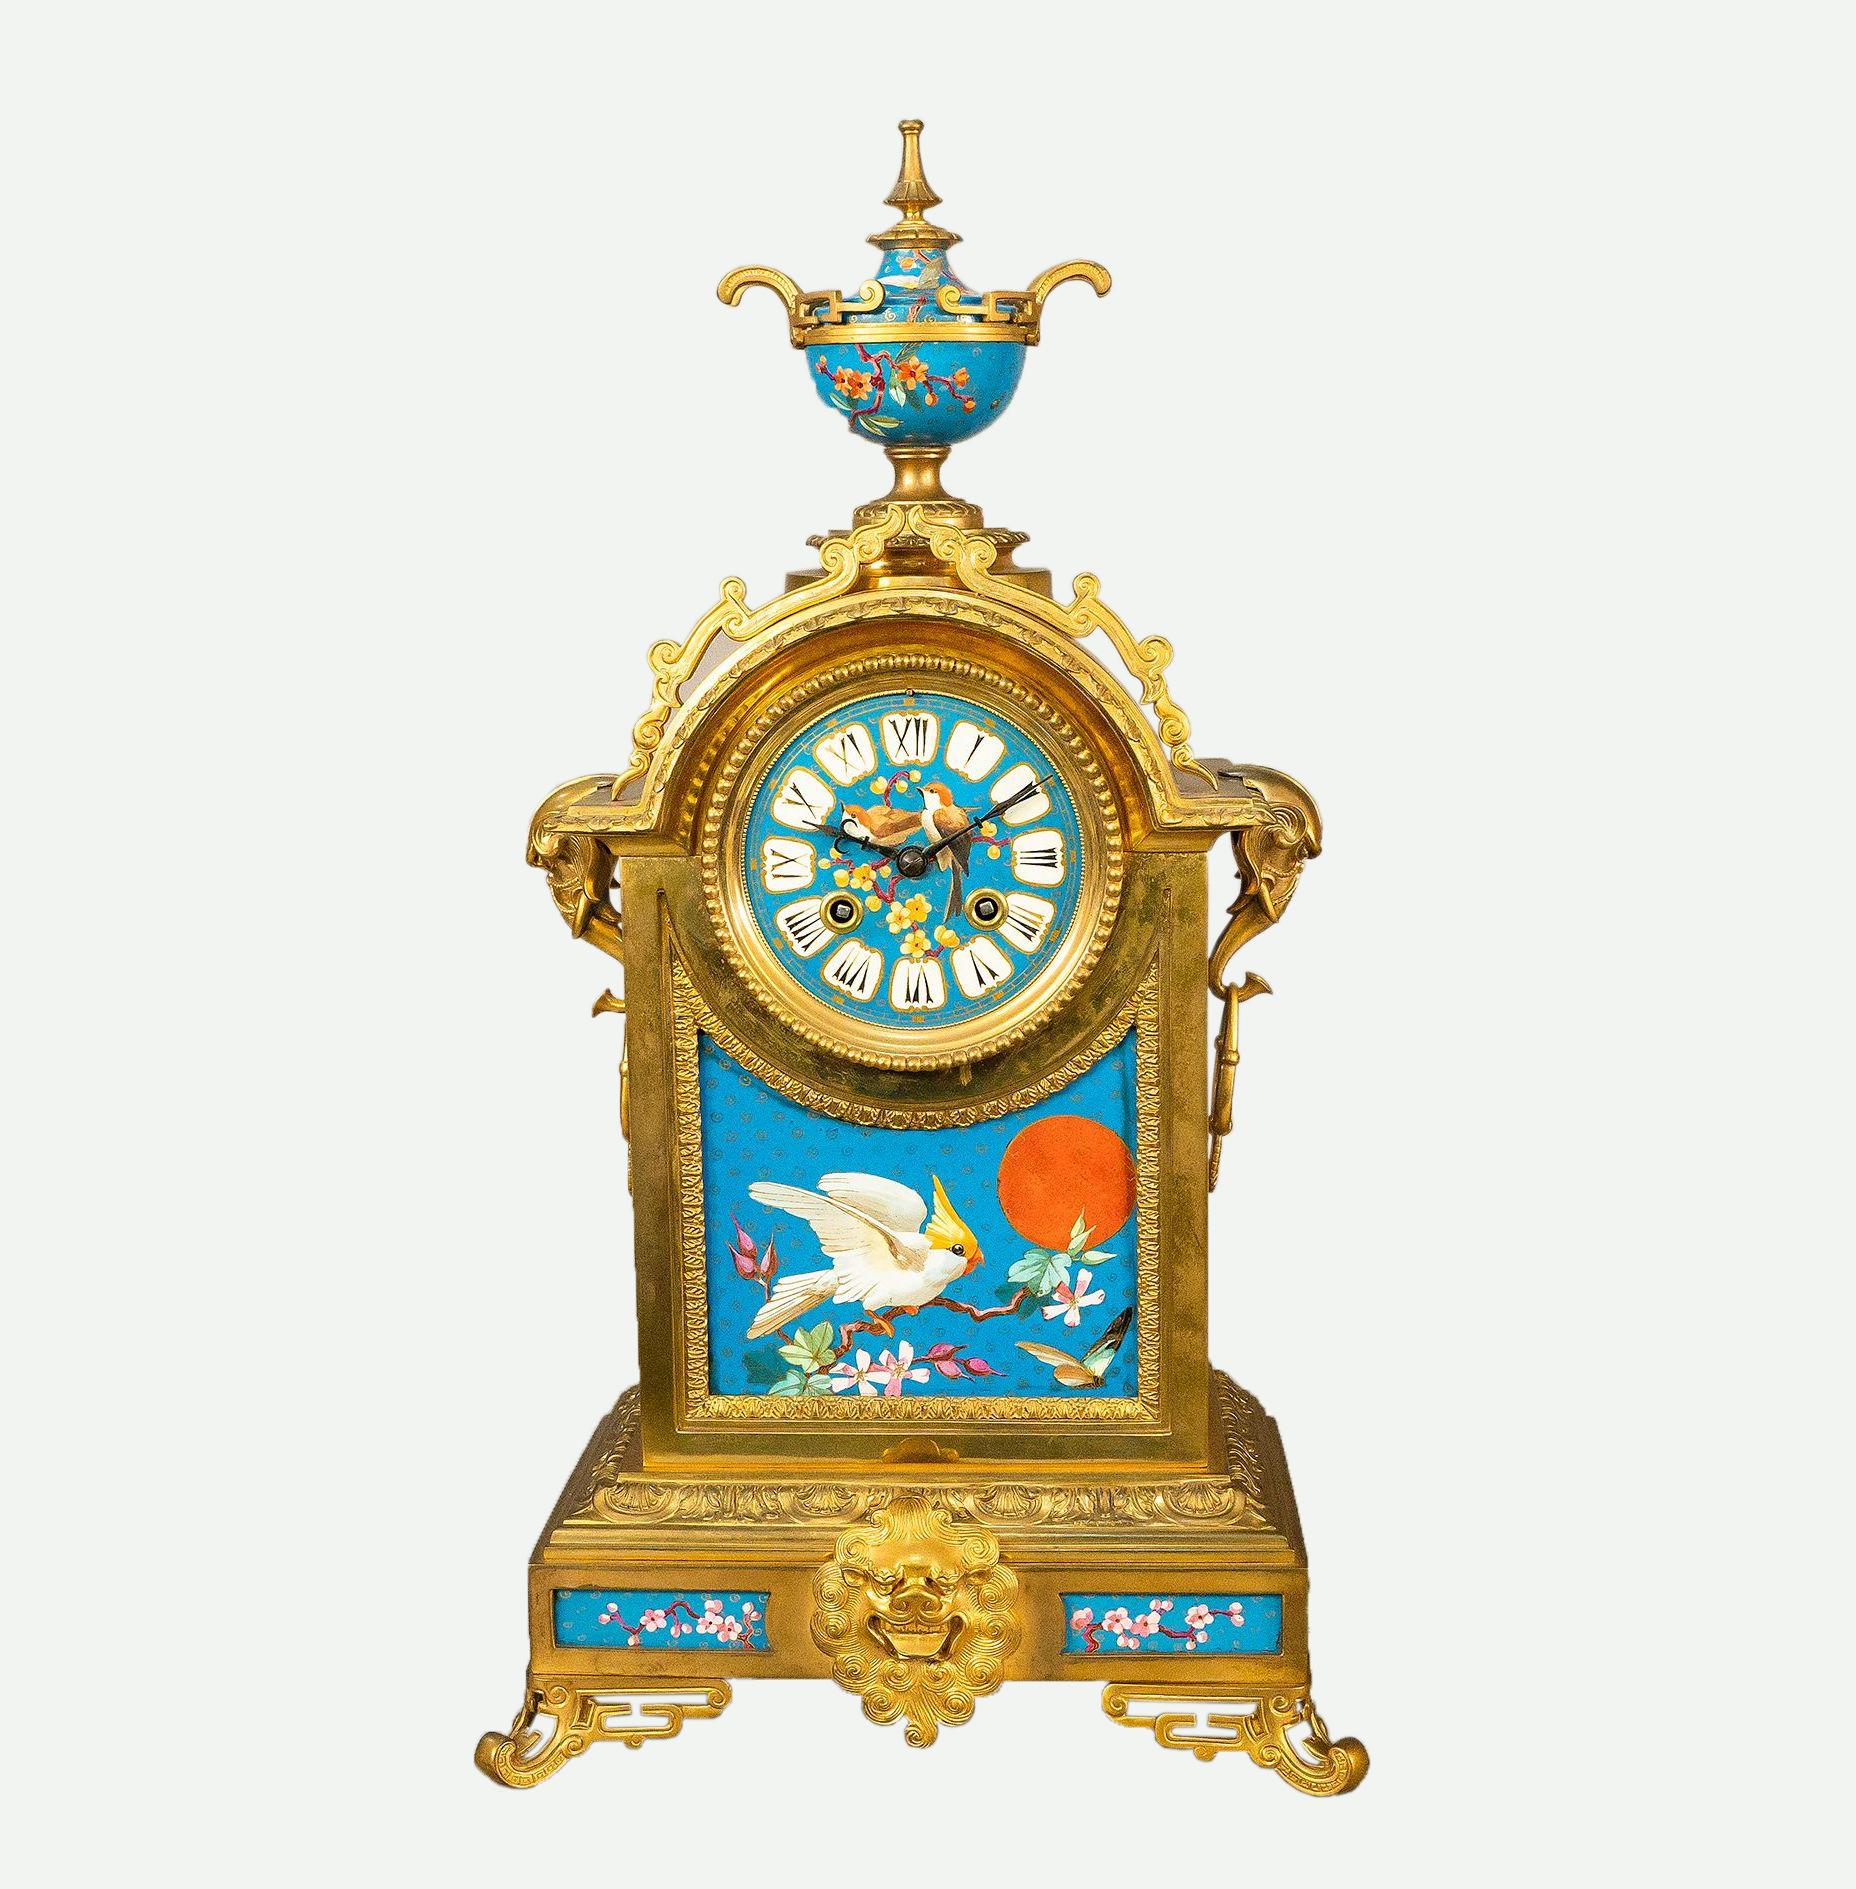 Eine sehr schöne antike 19. Jahrhundert Französisch vergoldeter Bronze und handbemaltes Porzellan 3-teilige Uhr im Japonisme-Stil gesetzt. Die Uhr ist fein verziert mit Porzellanplaketten, die im japanischen Stil mit Kirschblütenzweigen bemalt sind.